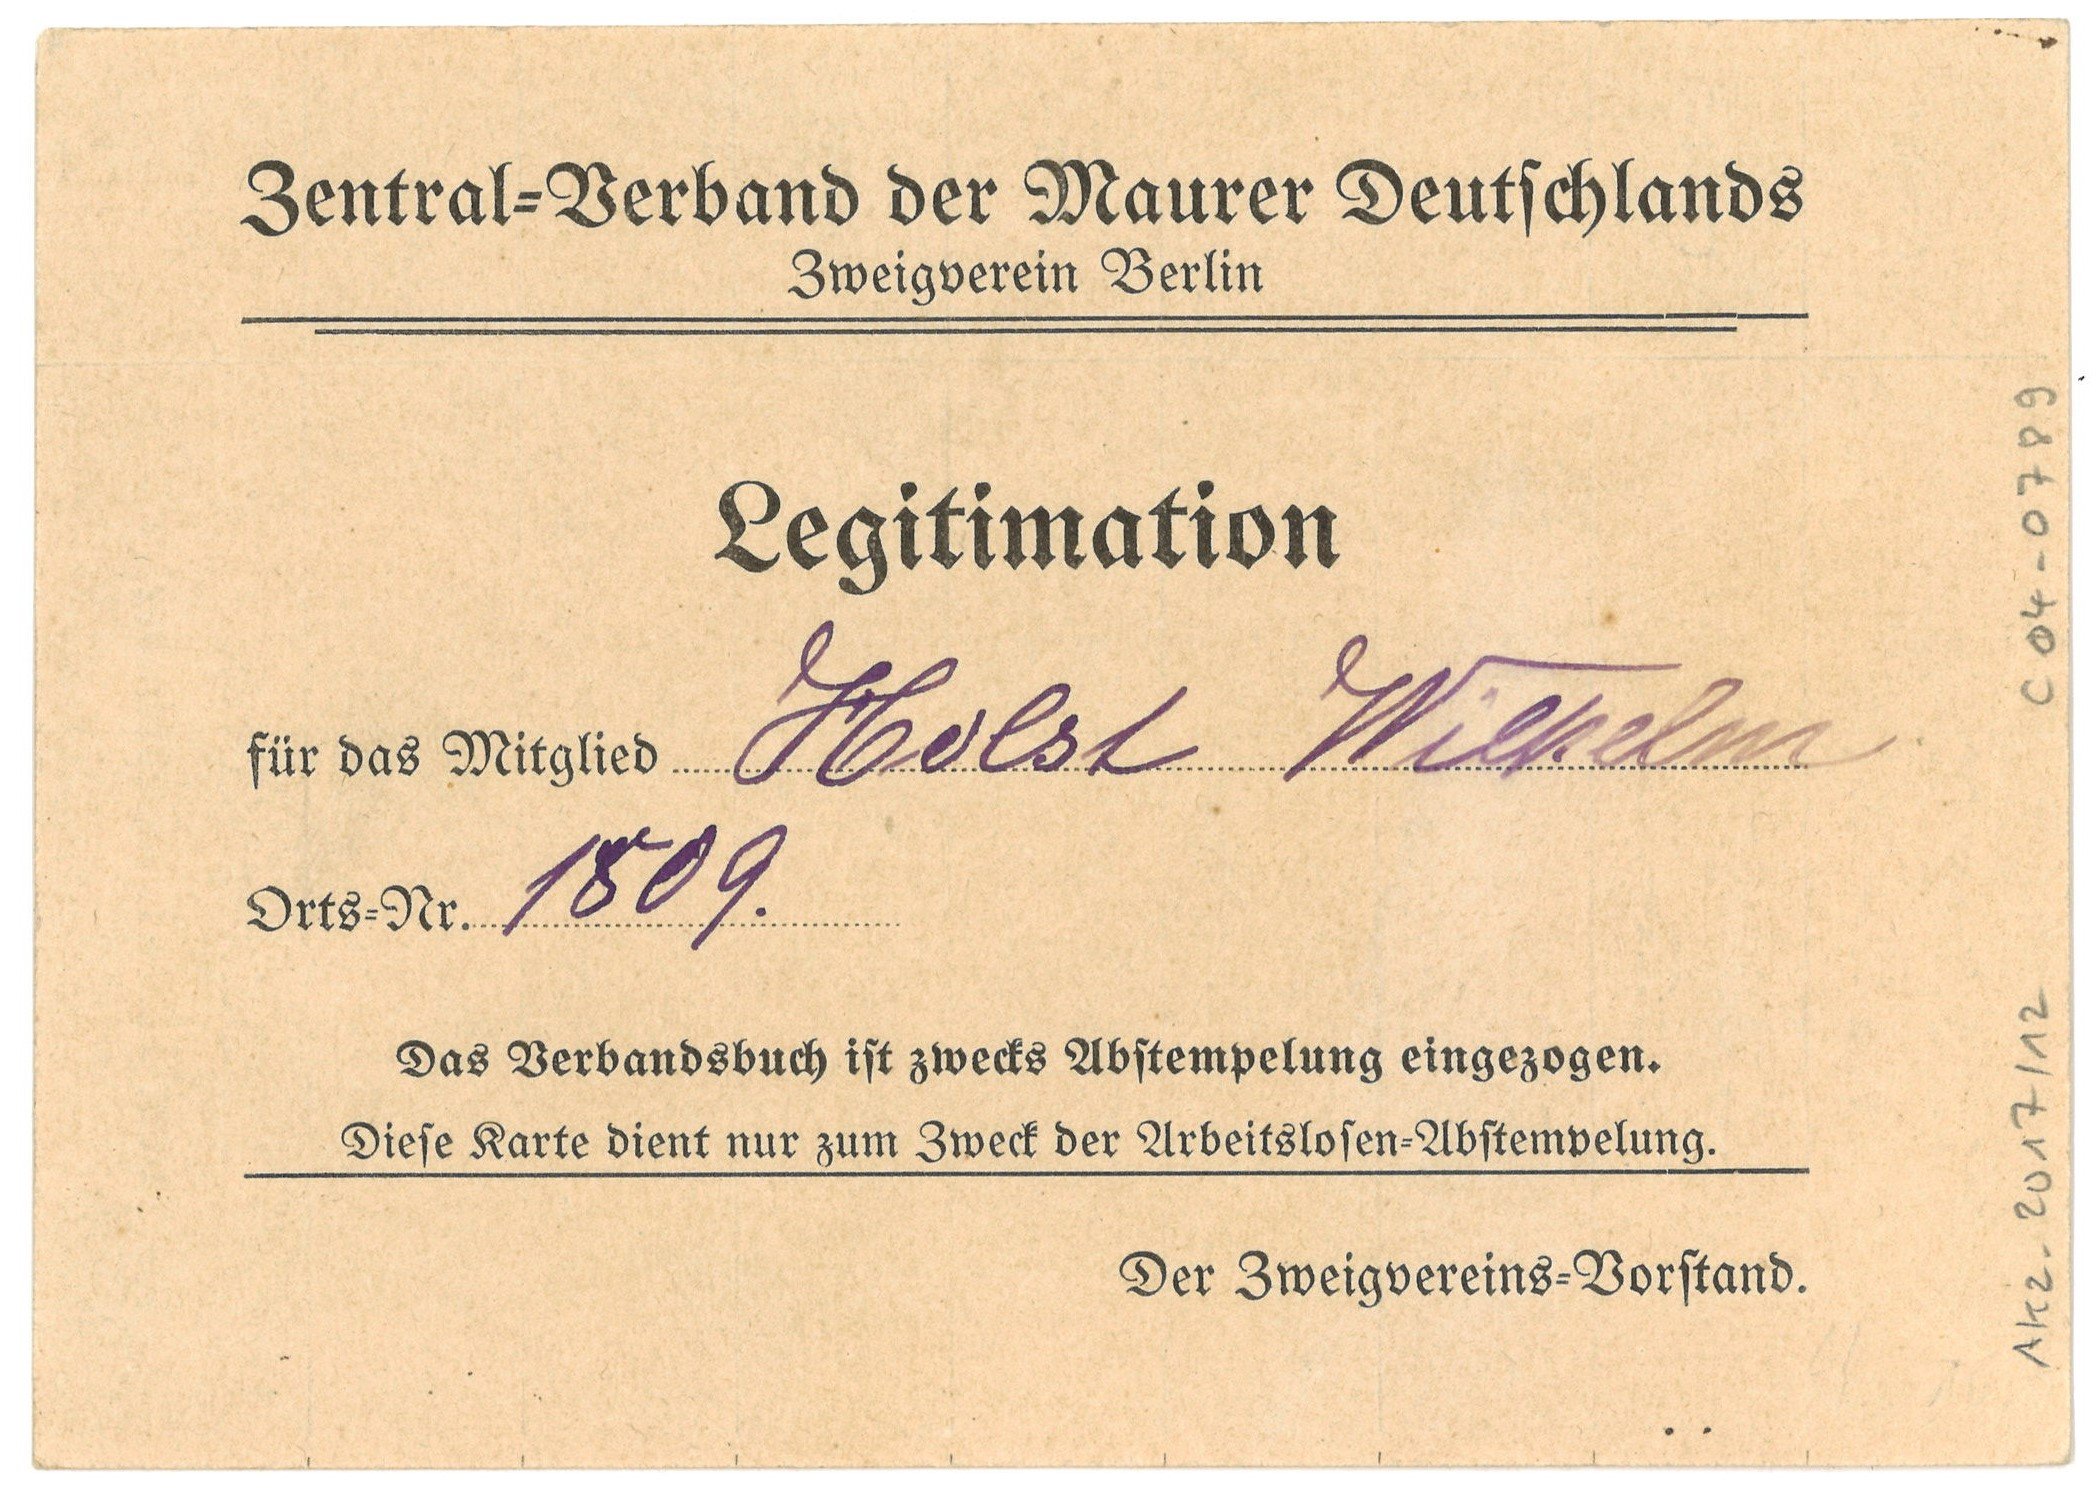 Mitgliedskarte des Zentral-Verbandes der Maurer Deutschlands für Wilhelm Holst in Berlin (ca. 1910) (Landesgeschichtliche Vereinigung für die Mark Brandenburg e.V., Archiv CC BY)